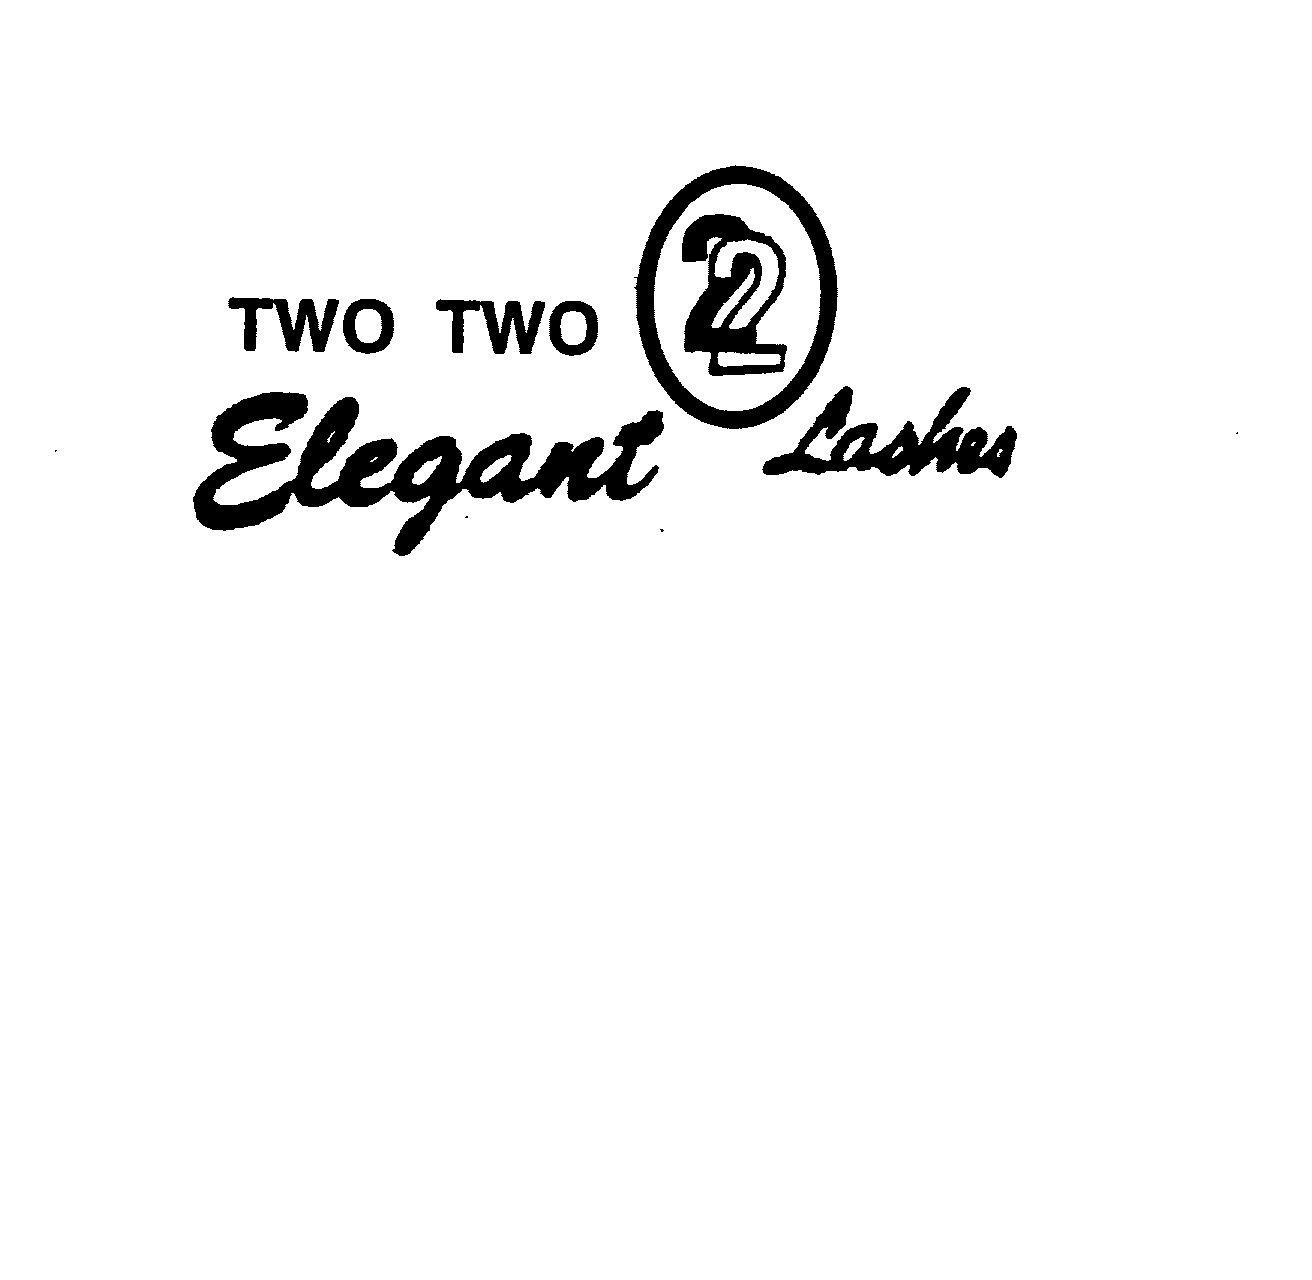  TWO TWO 22 ELEGANT LASHES